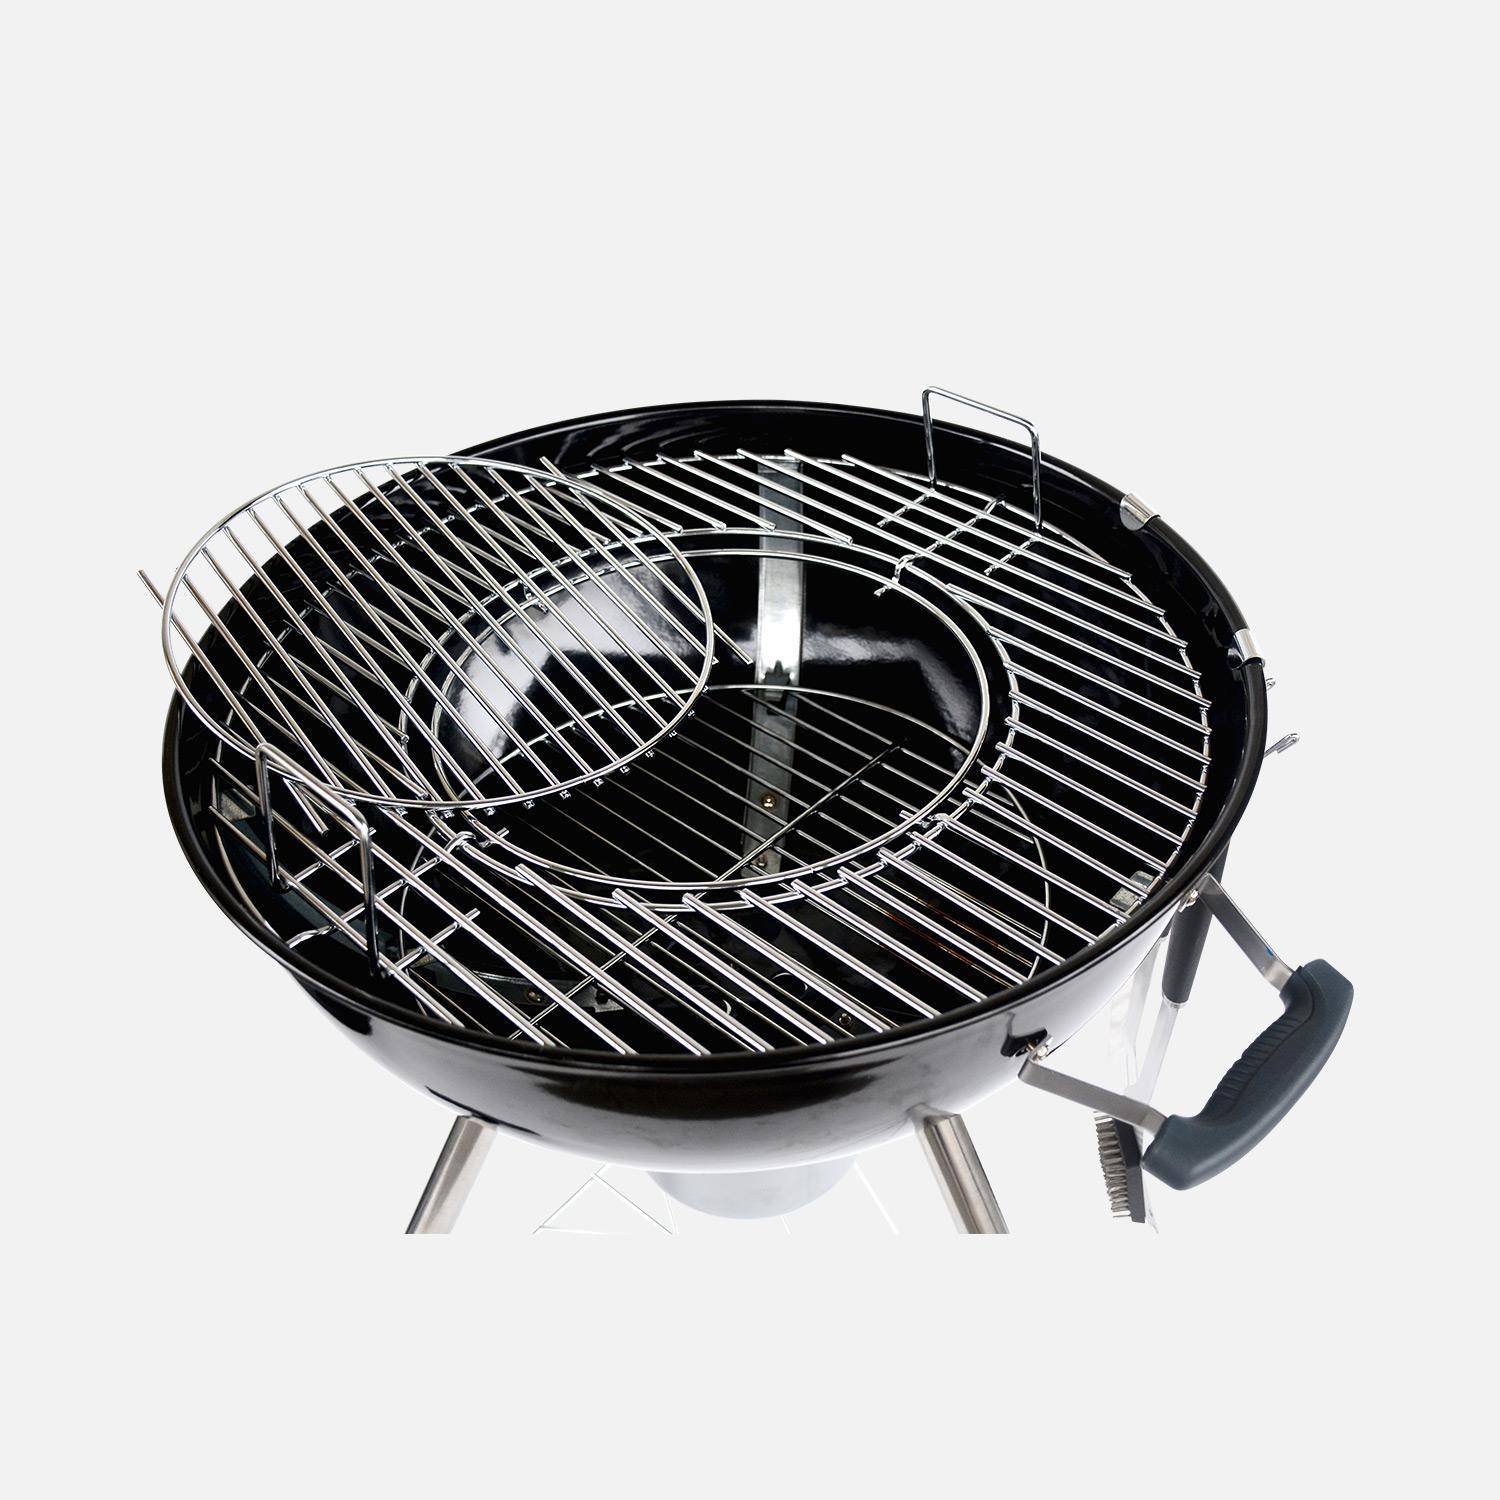 Barbecue PREMIUM charbon de bois Ø57cm, Charles + accessoires - noir émaillé, avec grille amovible, aérateurs, fumoir, récupérateur de cendres, housse, rack et ustensiles ,sweeek,Photo9